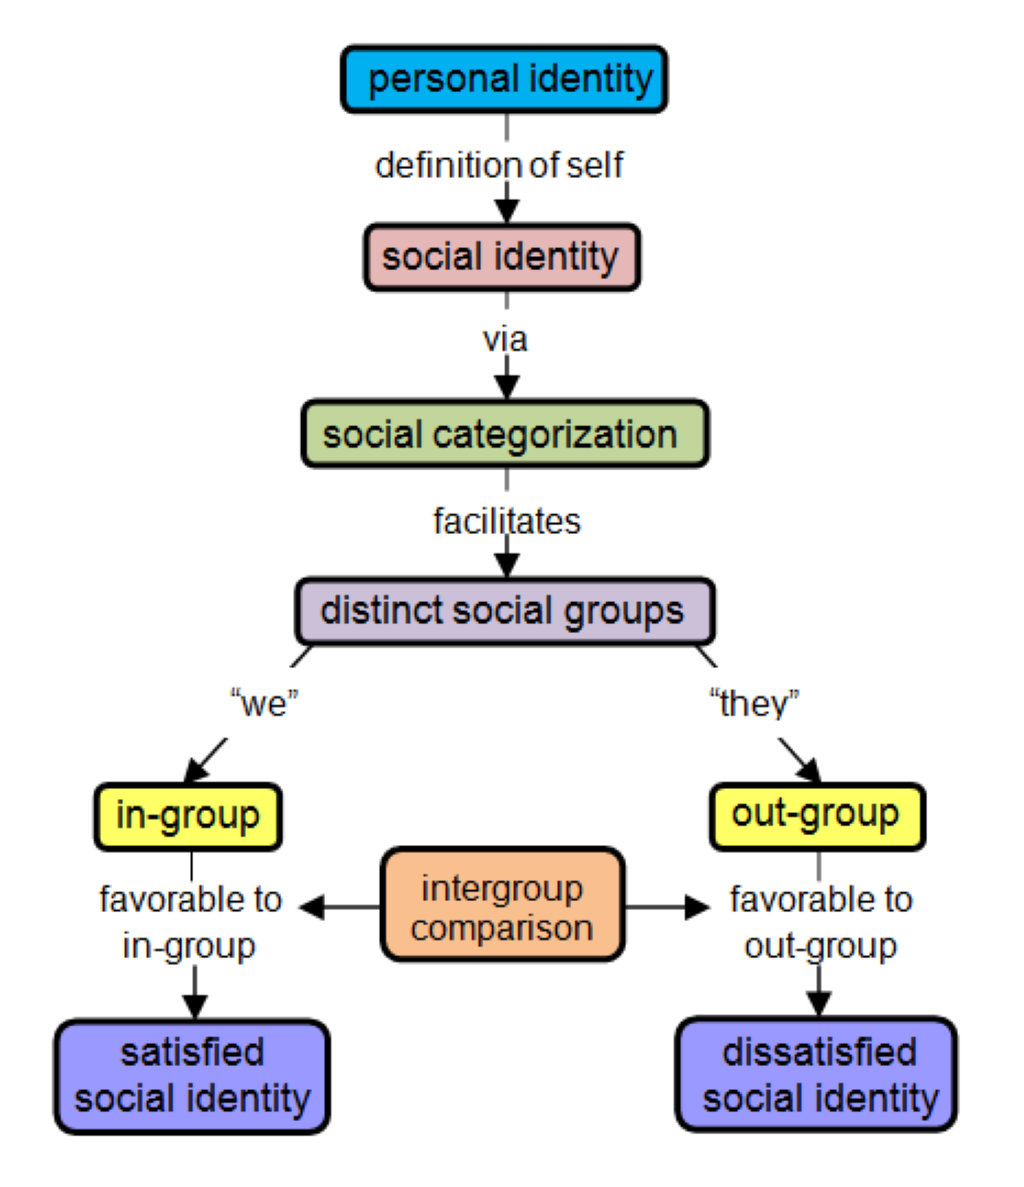 La théorie de l'identité sociale met en évidence les processus psychologiques impliqués dans le changement social